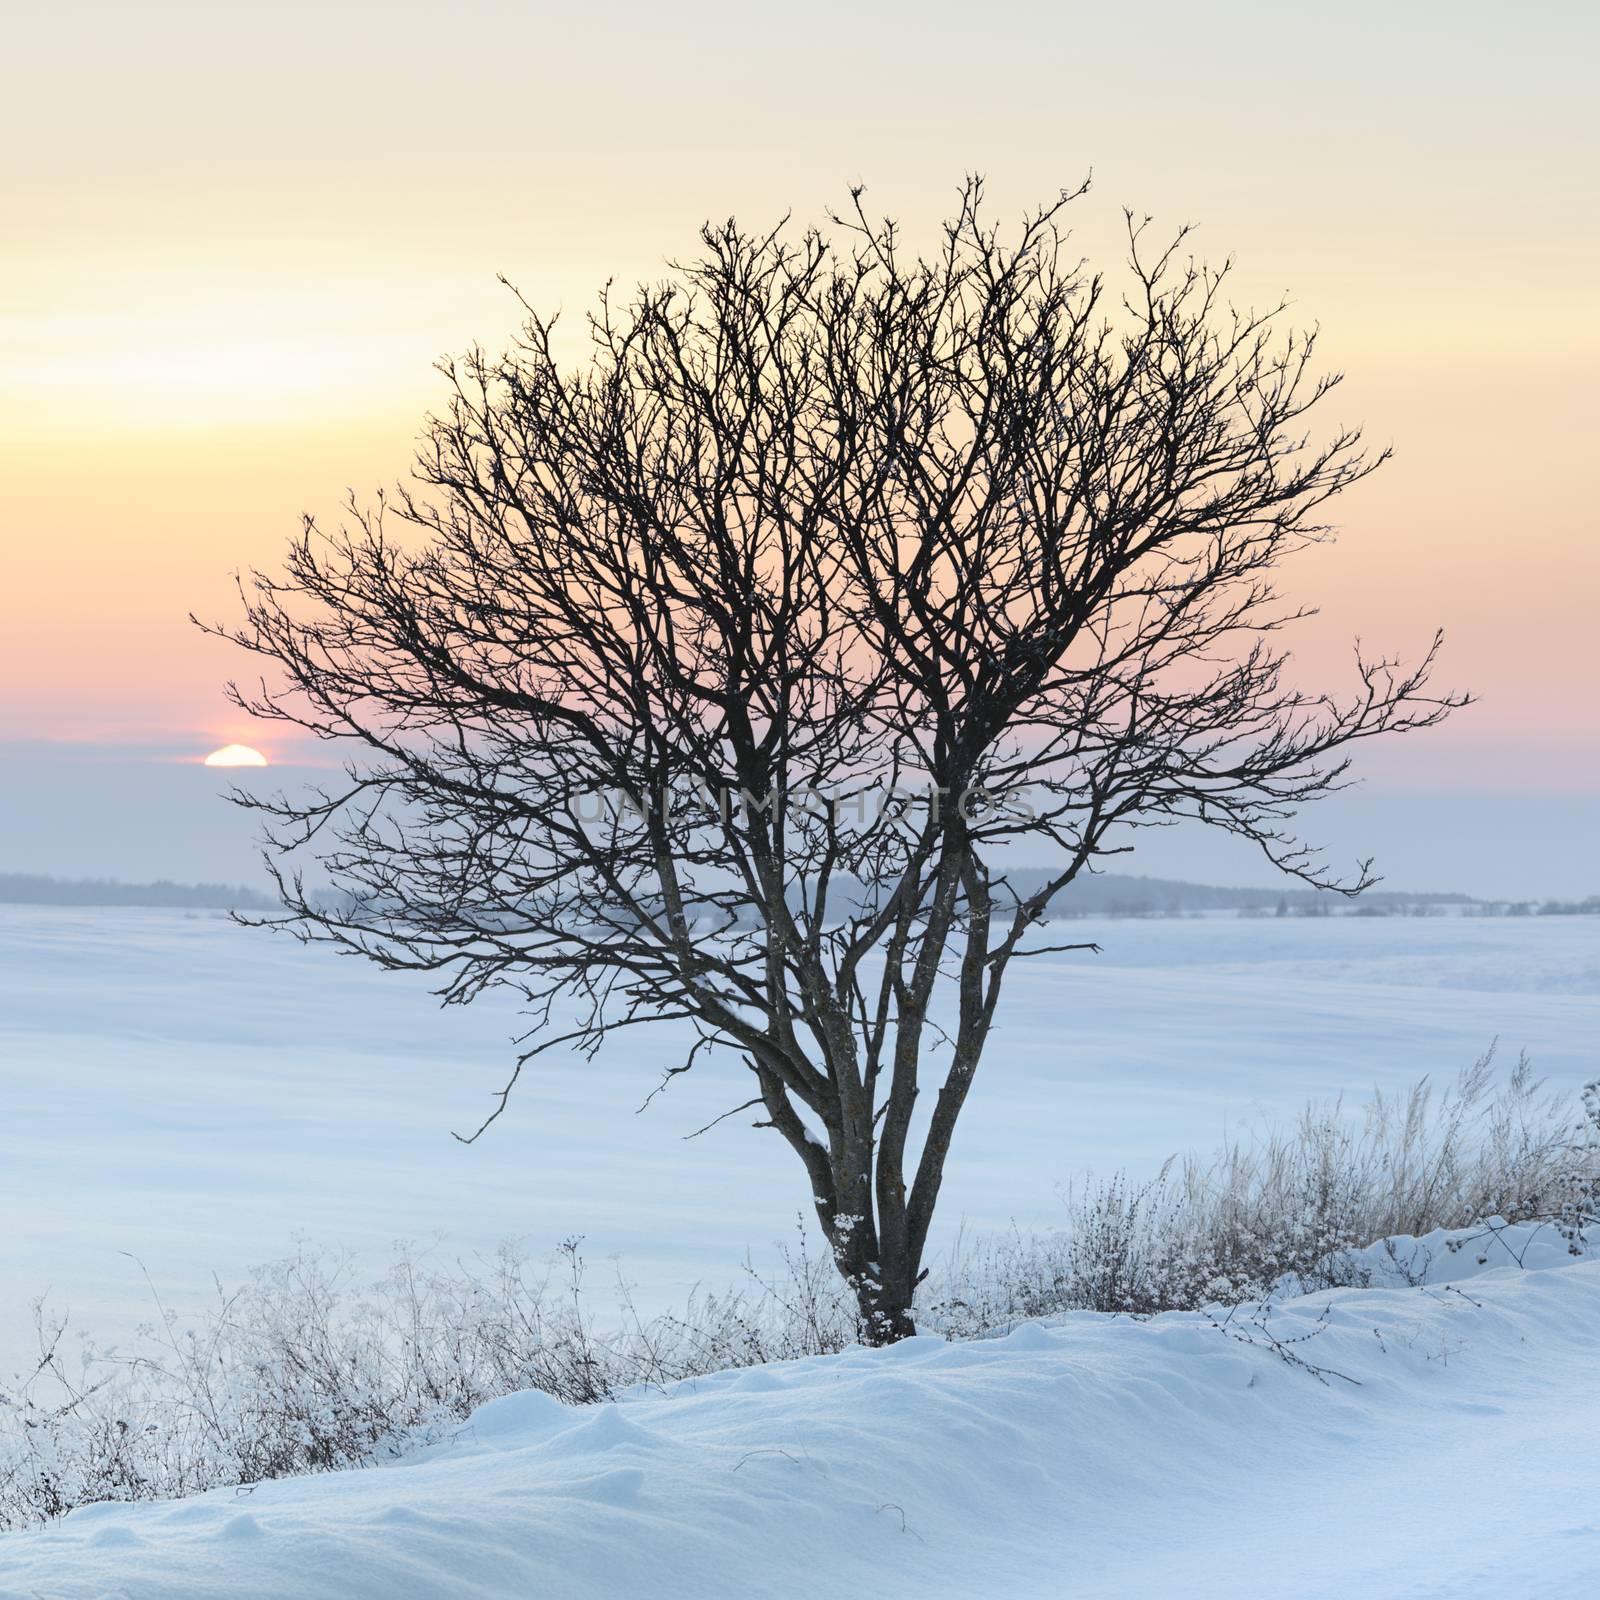 Tree in a field in winter, lovely frosty day